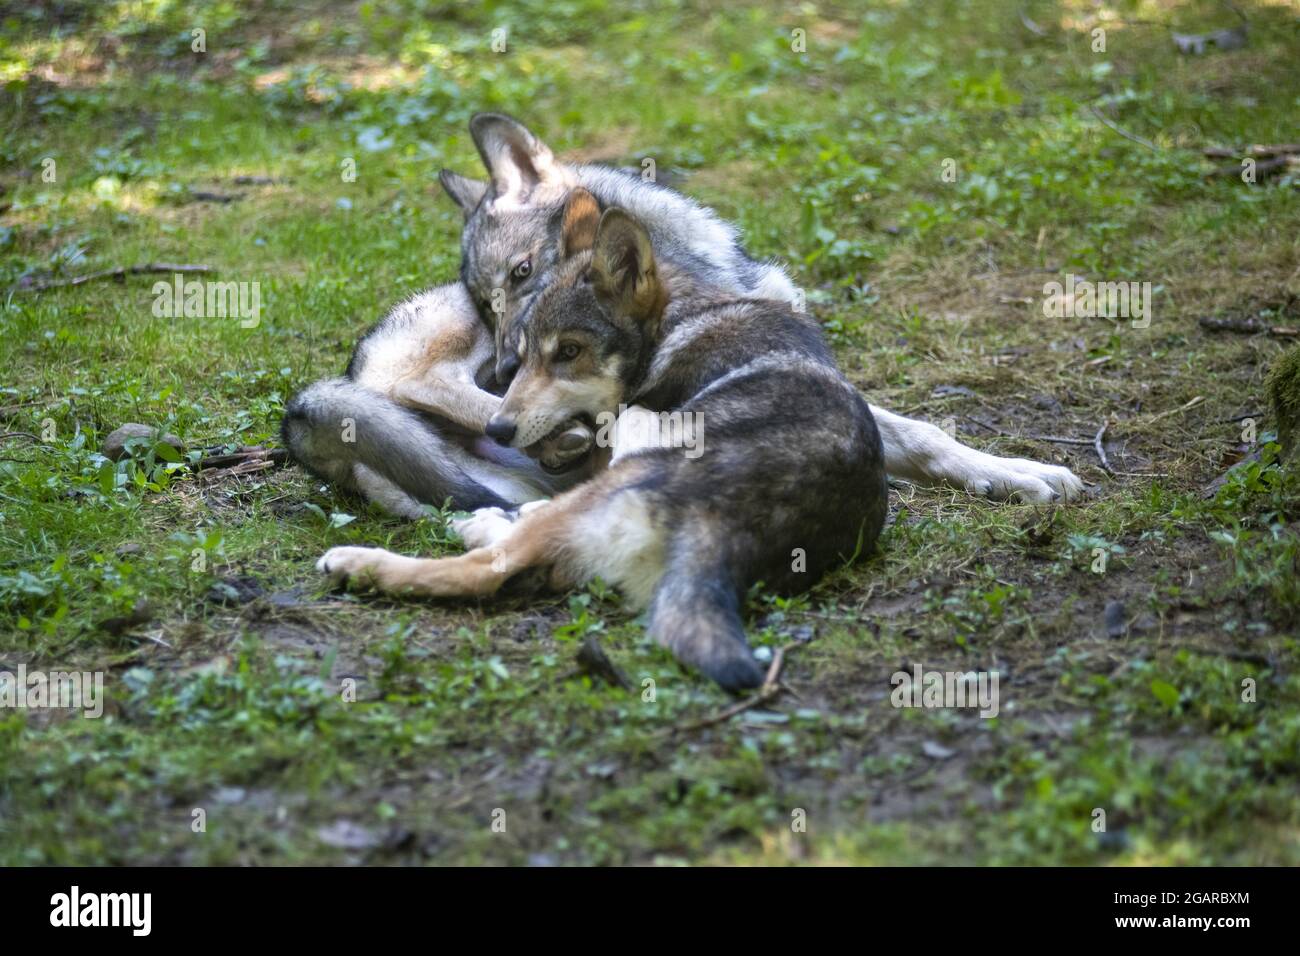 Deux jeunes loups luttent et jouent sur l'herbe verte Banque D'Images